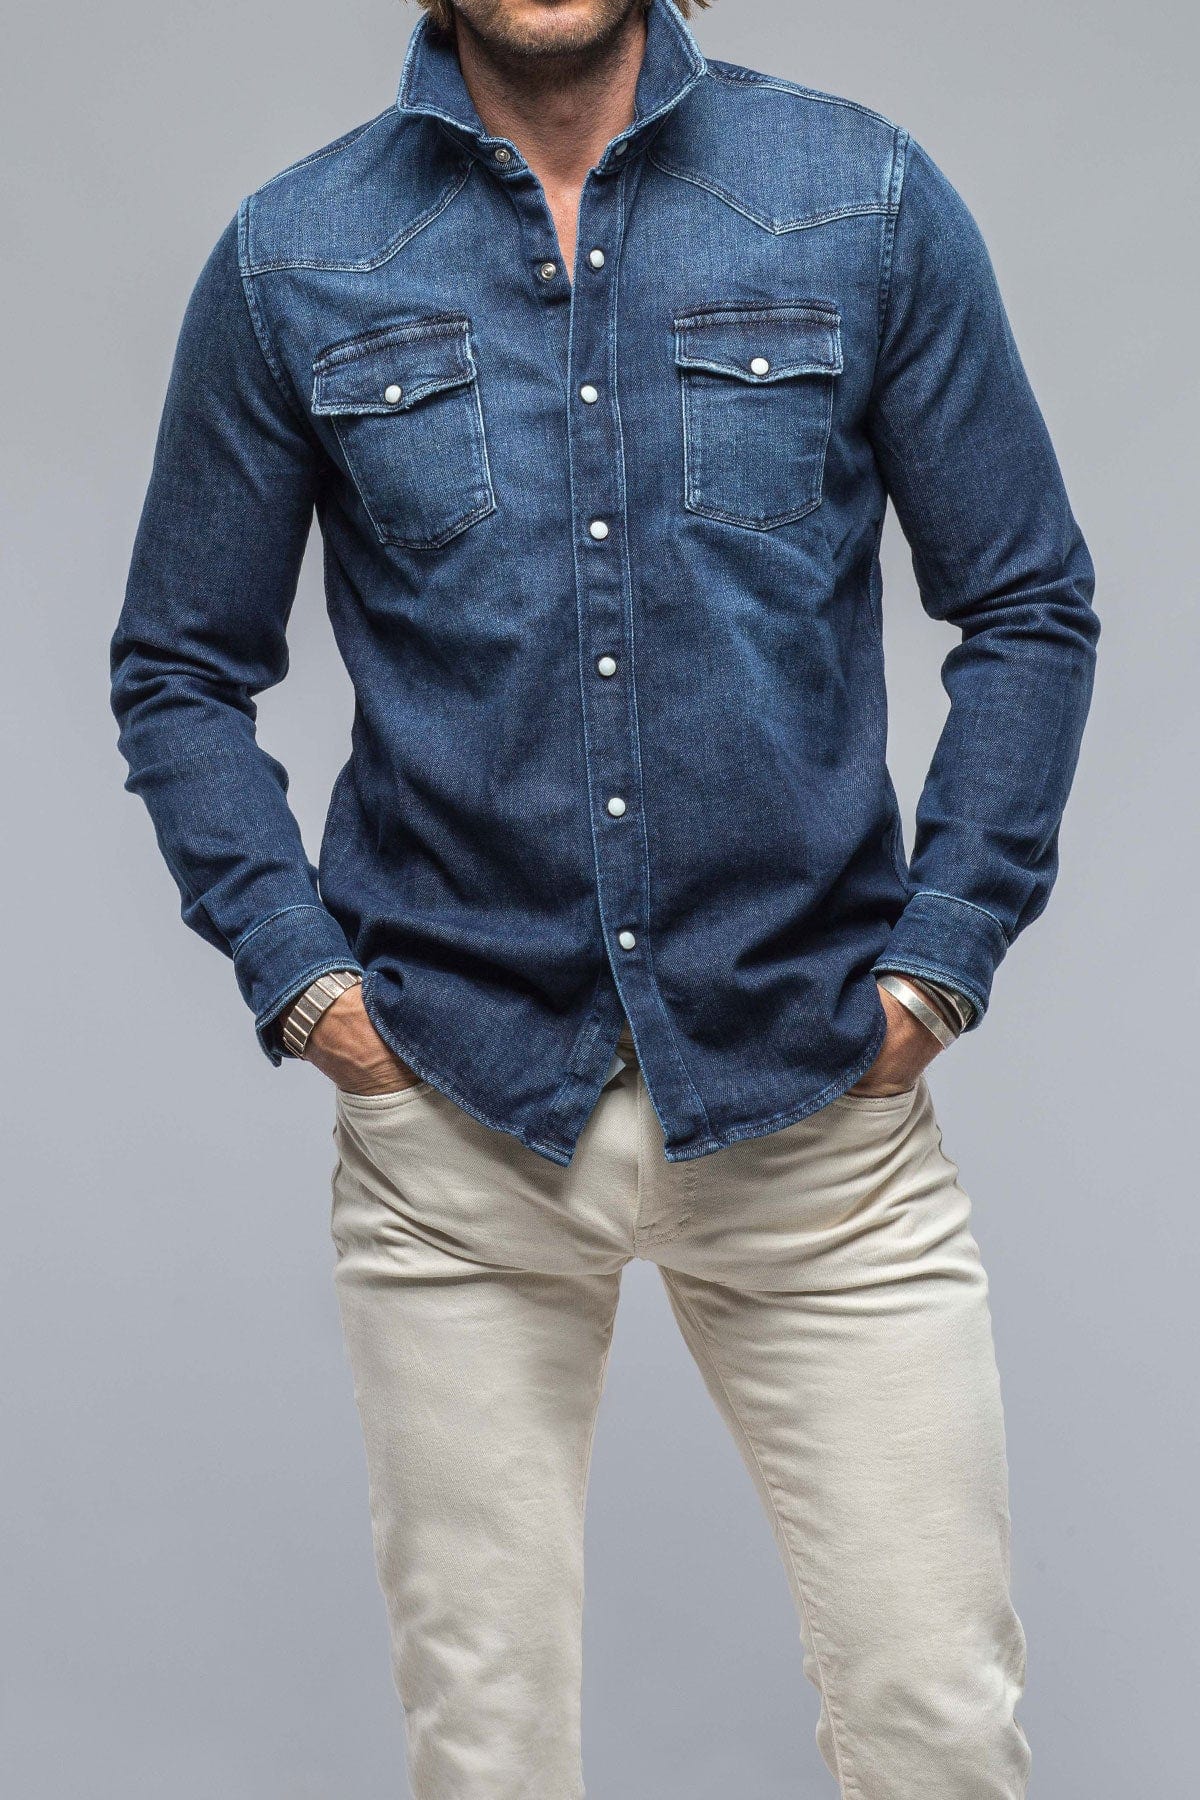 Buy Navy Blue Shirts for Men by SADO Online | Ajio.com